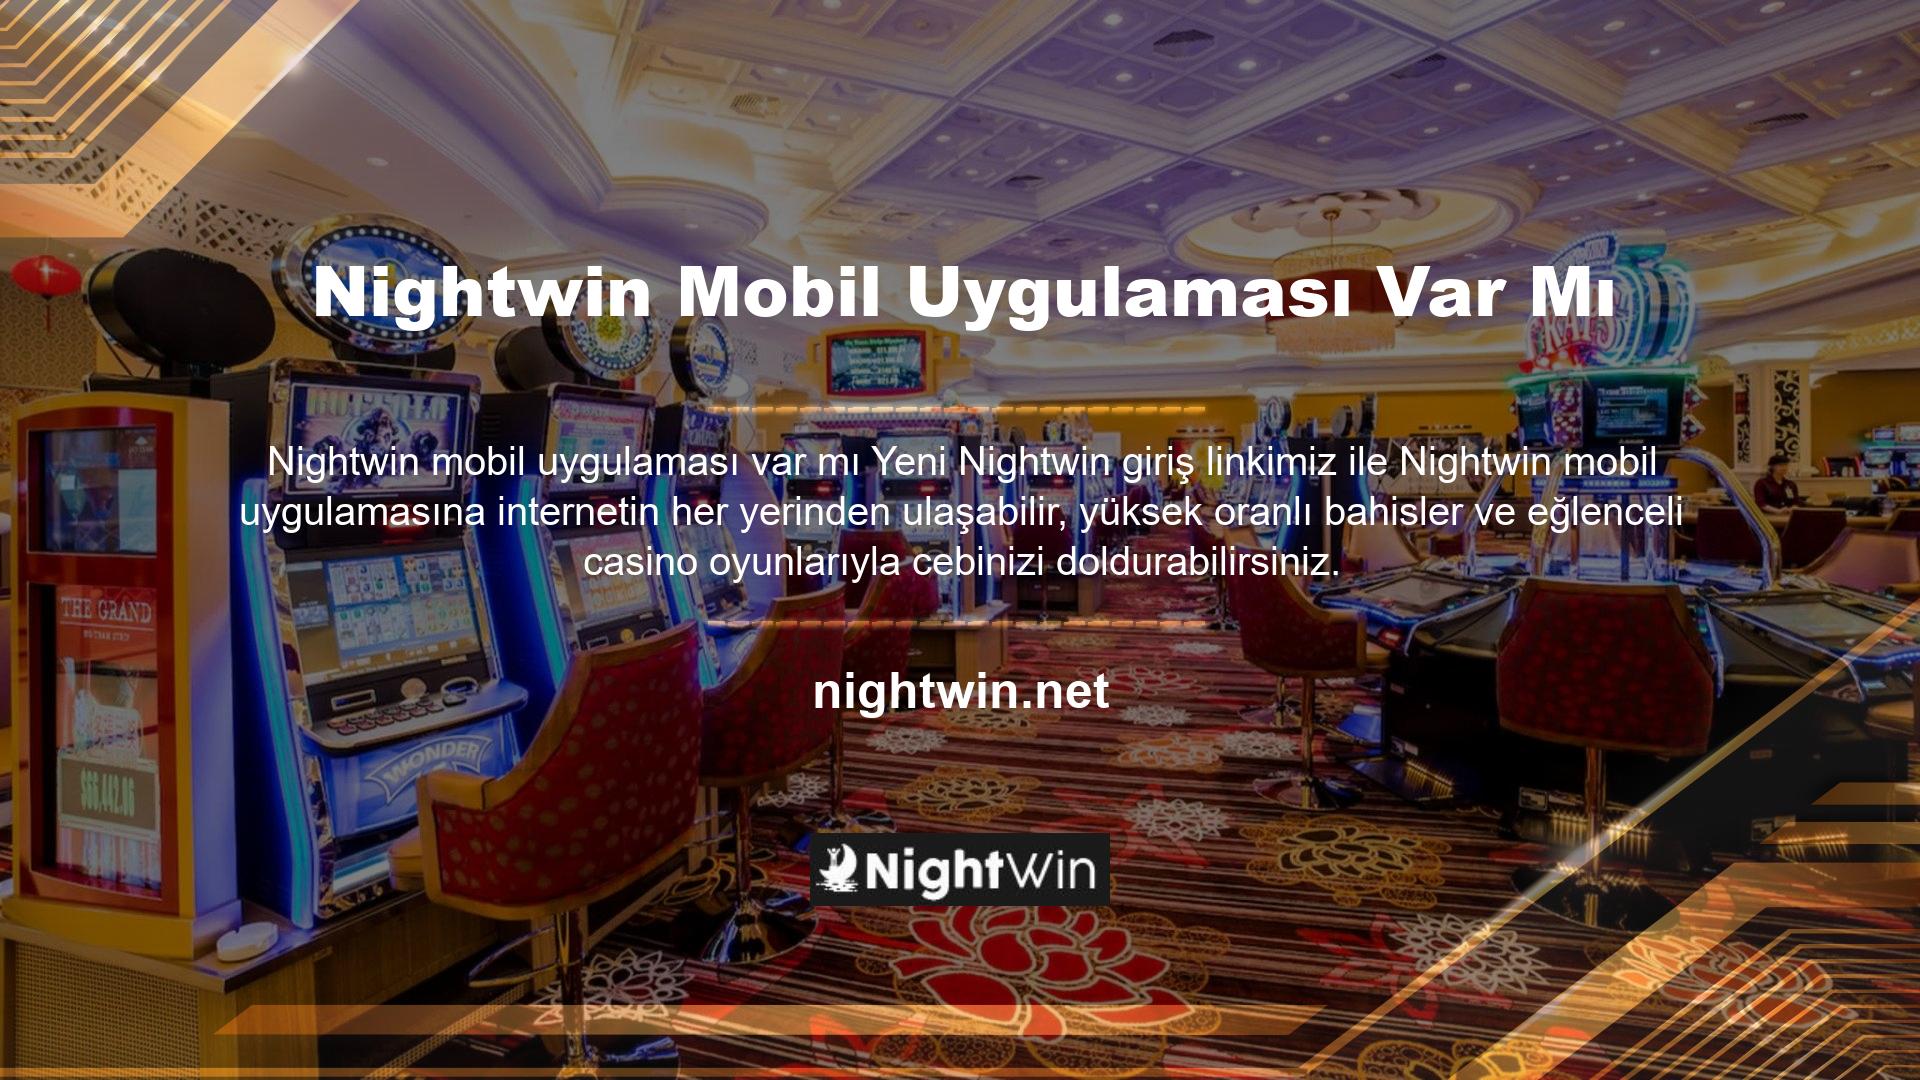 Üyelerine kesintisiz oyun oynama imkanı sunan birkaç casino sitesinden biri olan Nightwin bile bazen 'bağlanamıyor' şikayetleri alıyor